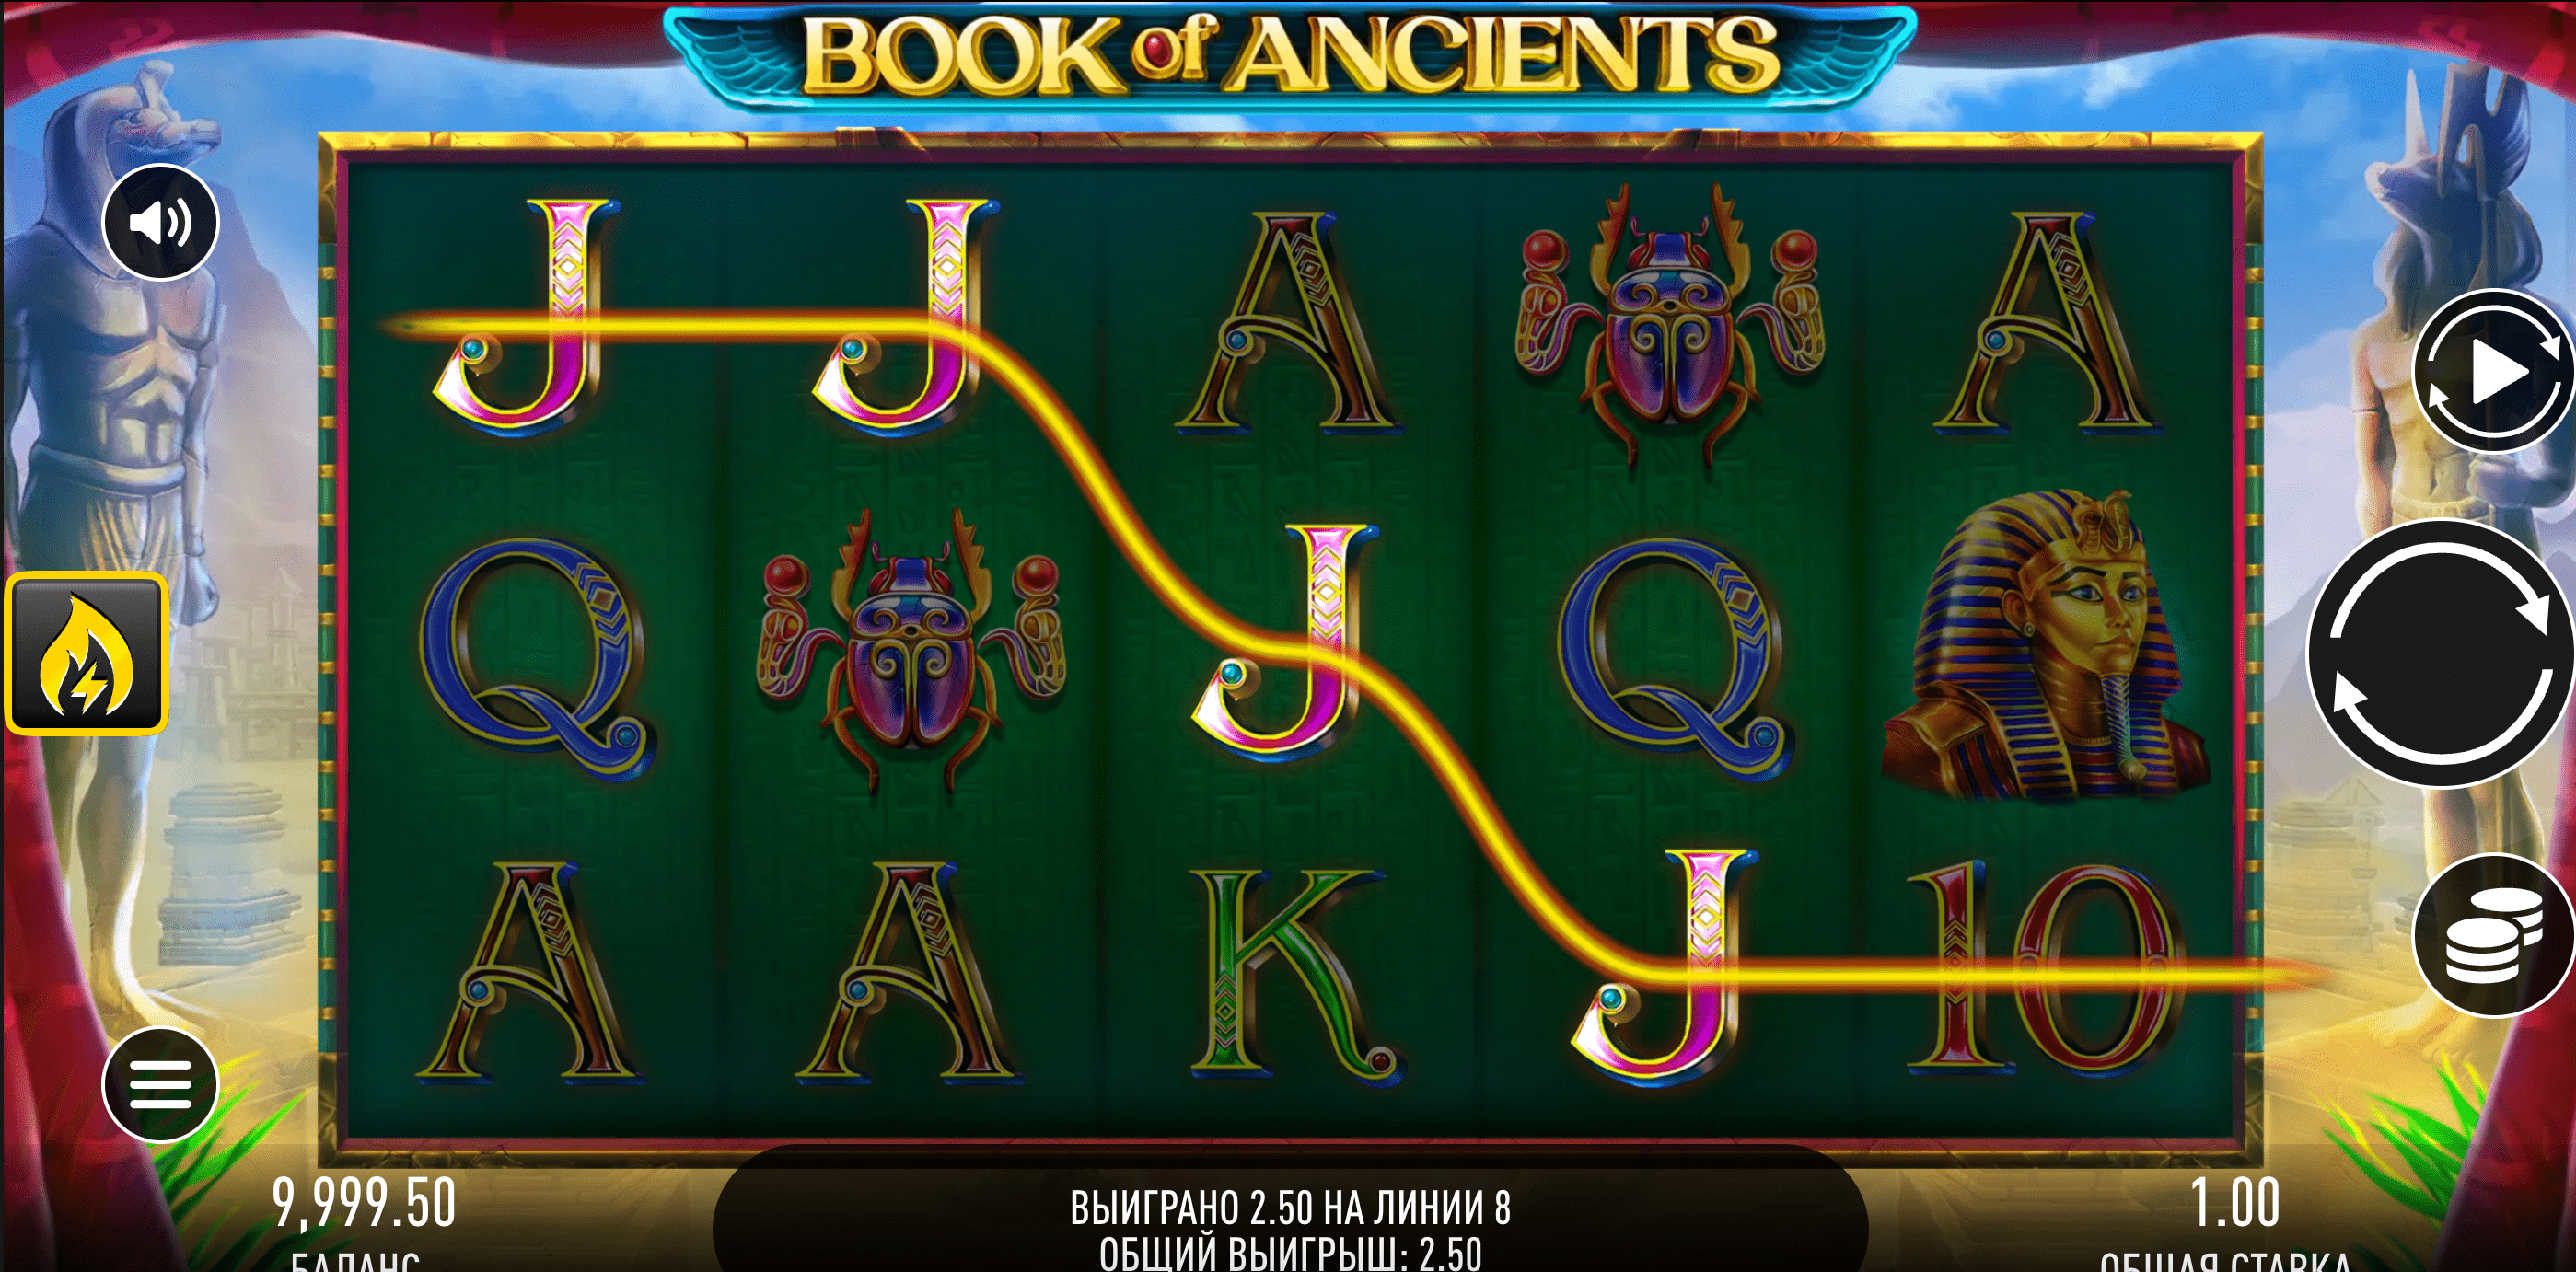 Book of Ancients proceso de juego